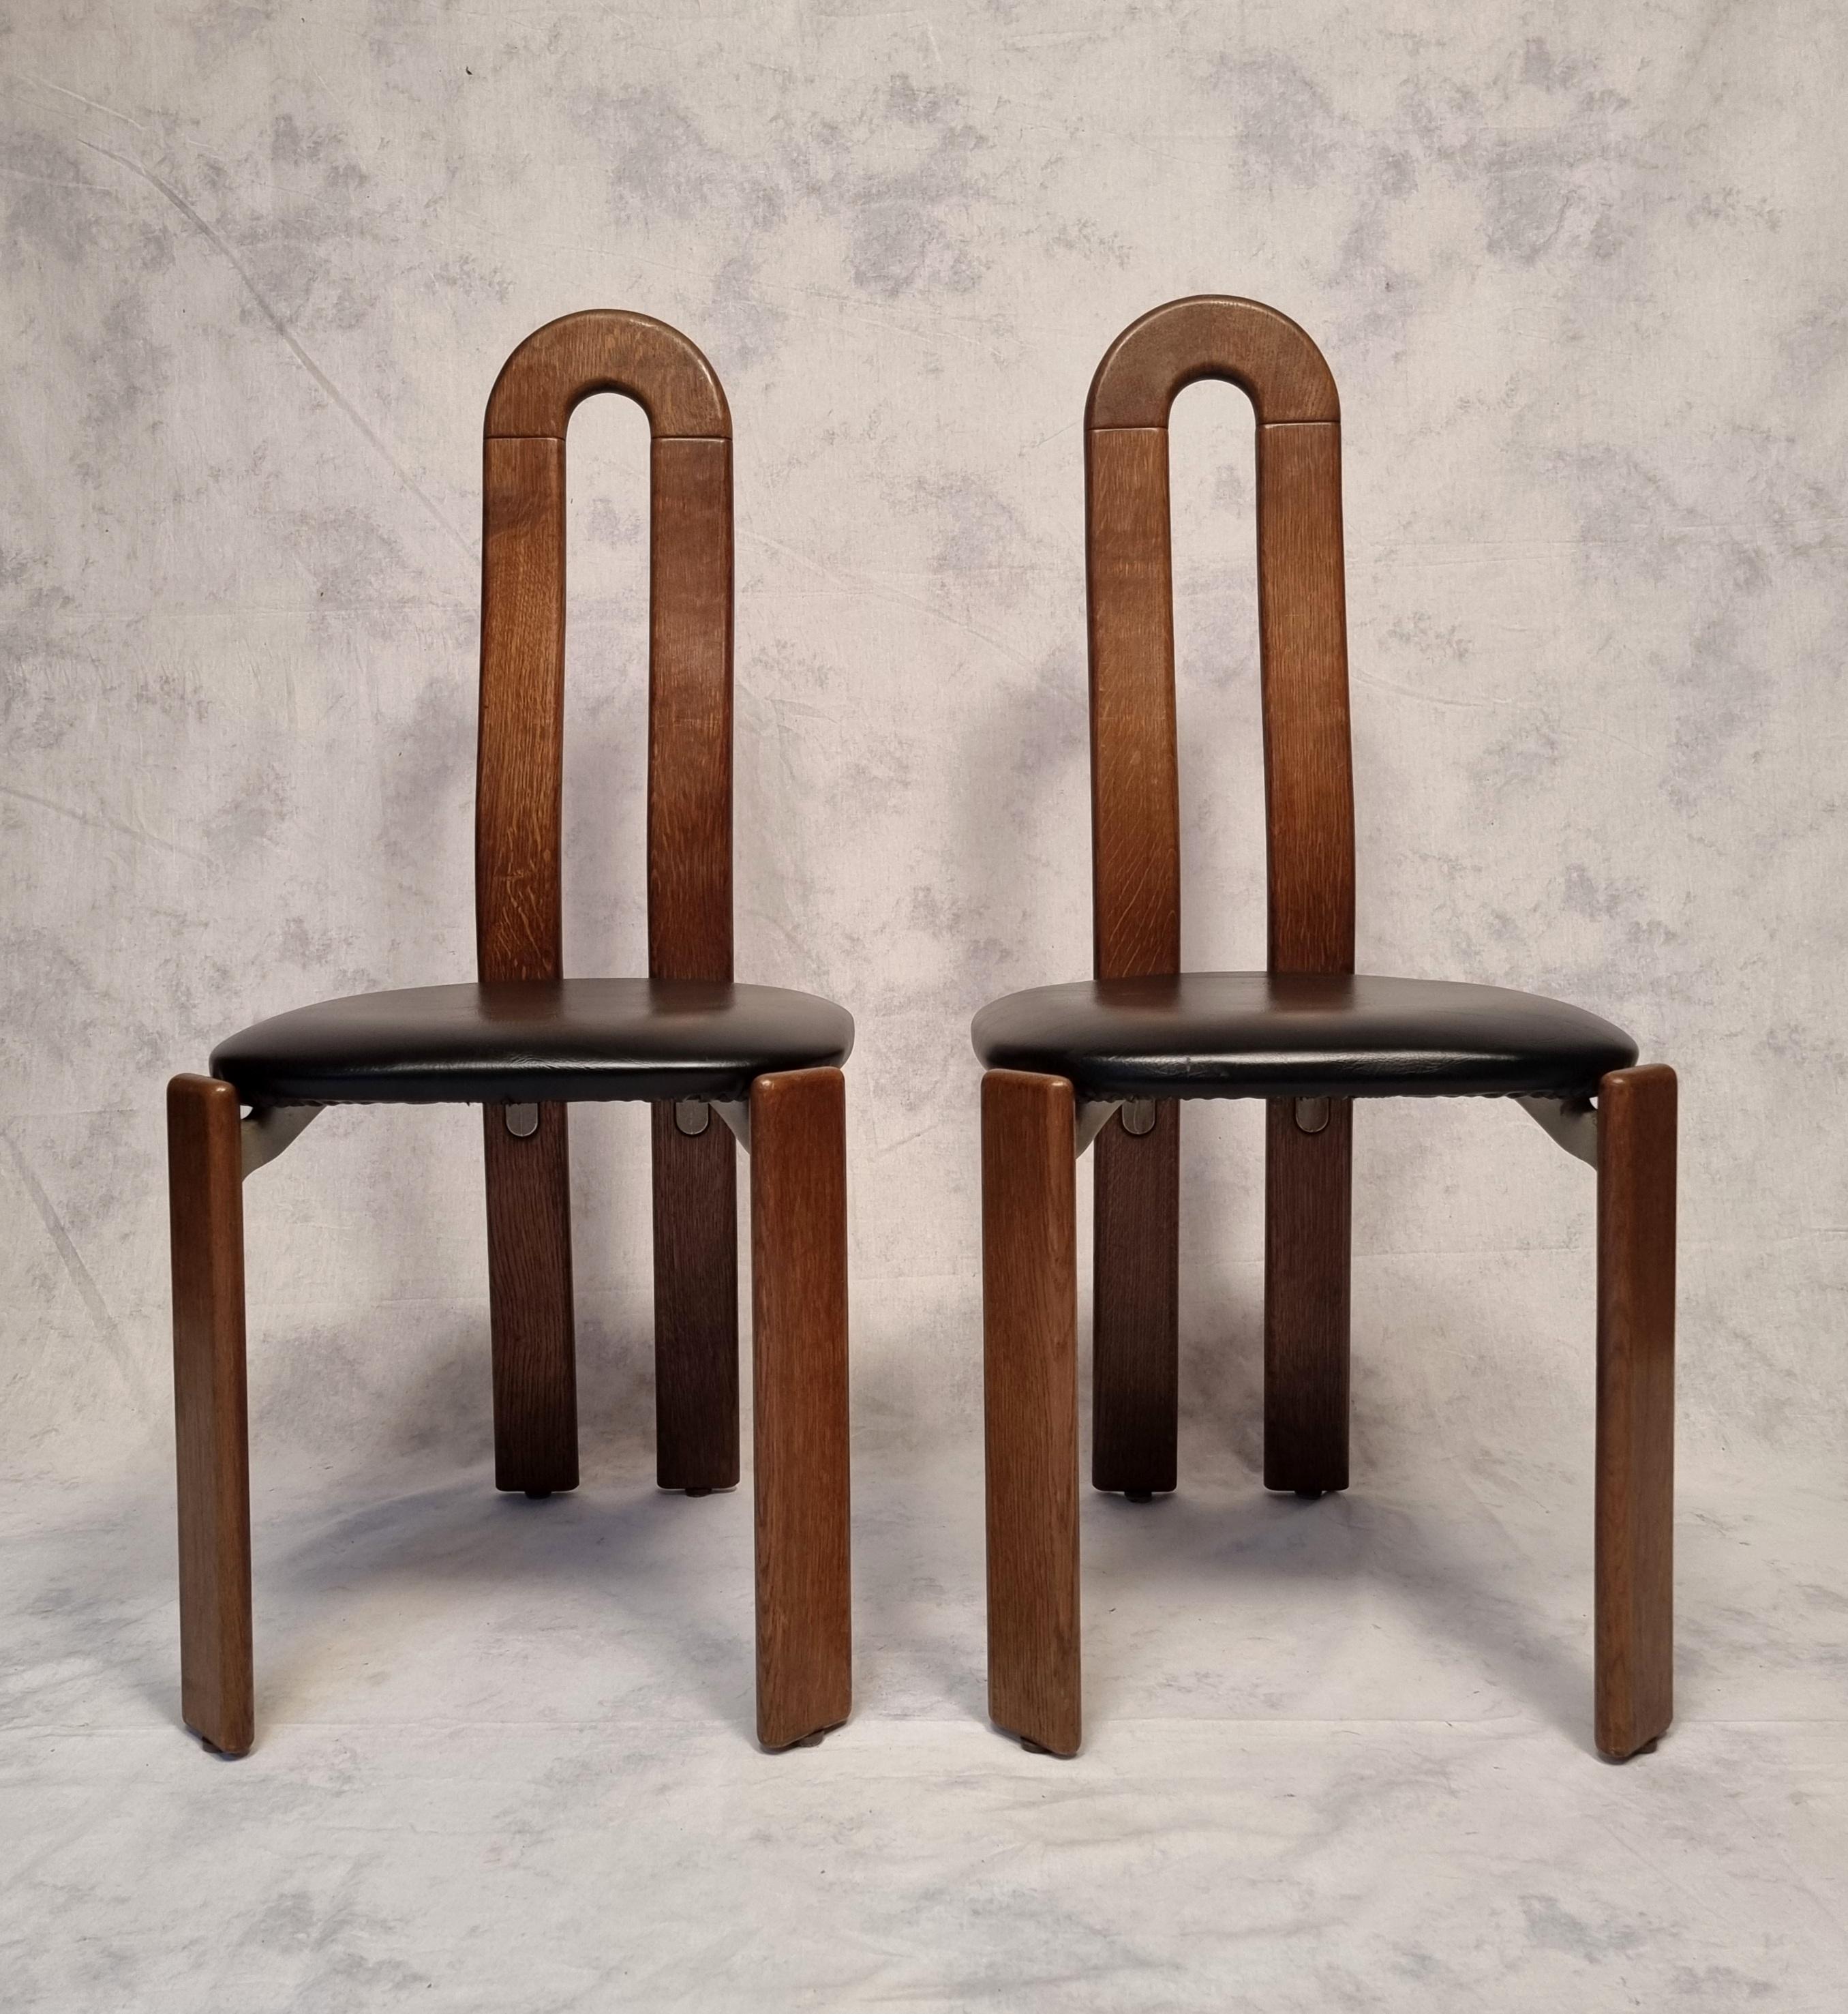 Bruno Rey Chairs for Dietiker by Atelier Stuhl Aus Stein Am Rhein, Oak, Ca 1970 For Sale 3